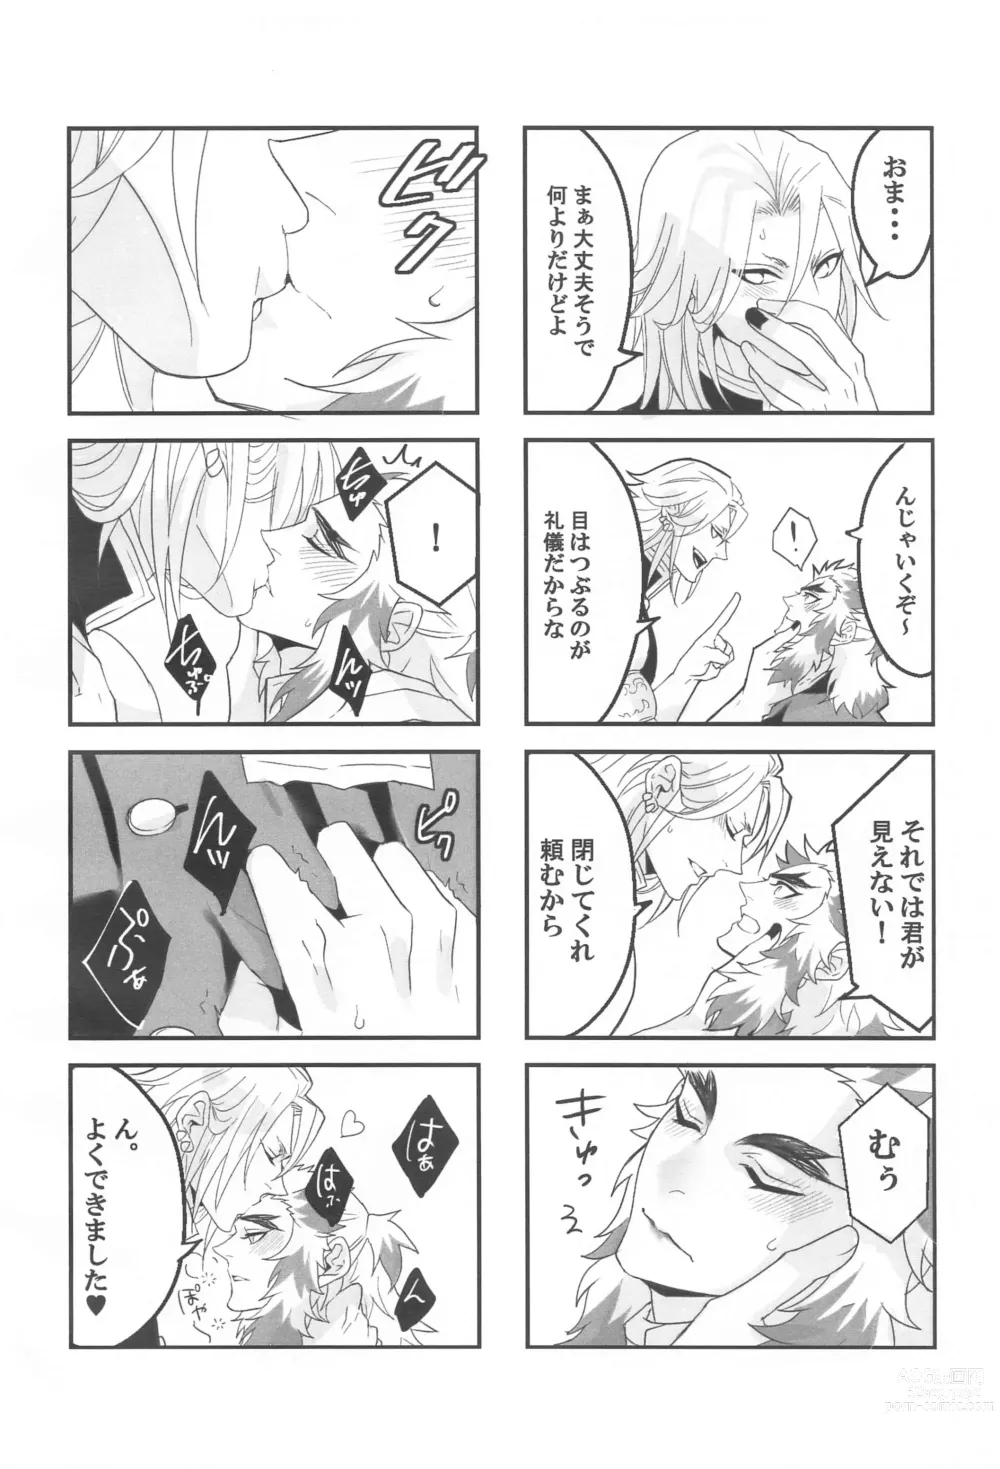 Page 5 of doujinshi ●● Shinai to Derarenai Heya